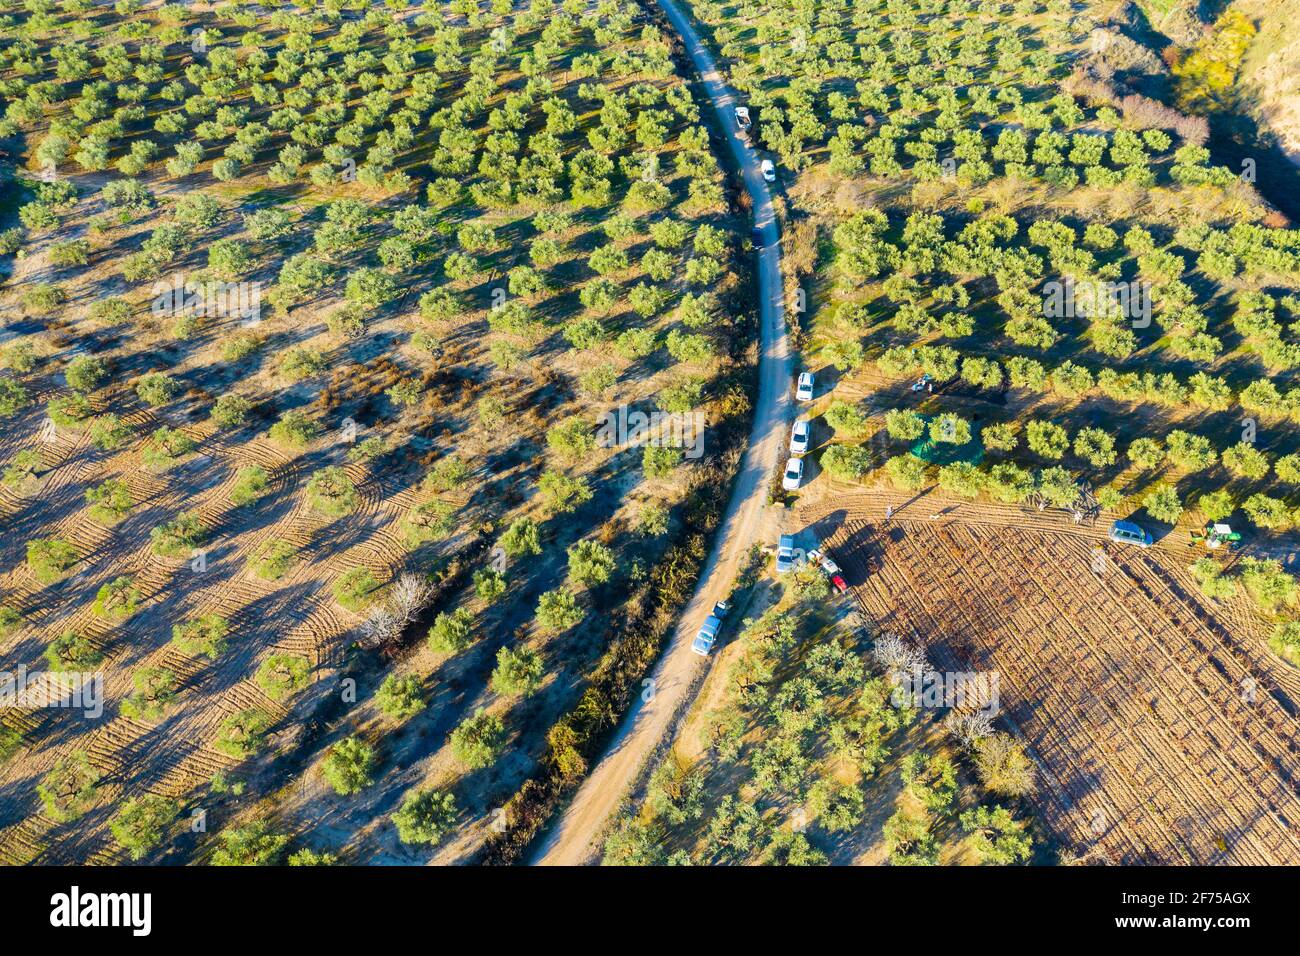 Vista aérea de una finca con olivos. Foto de stock